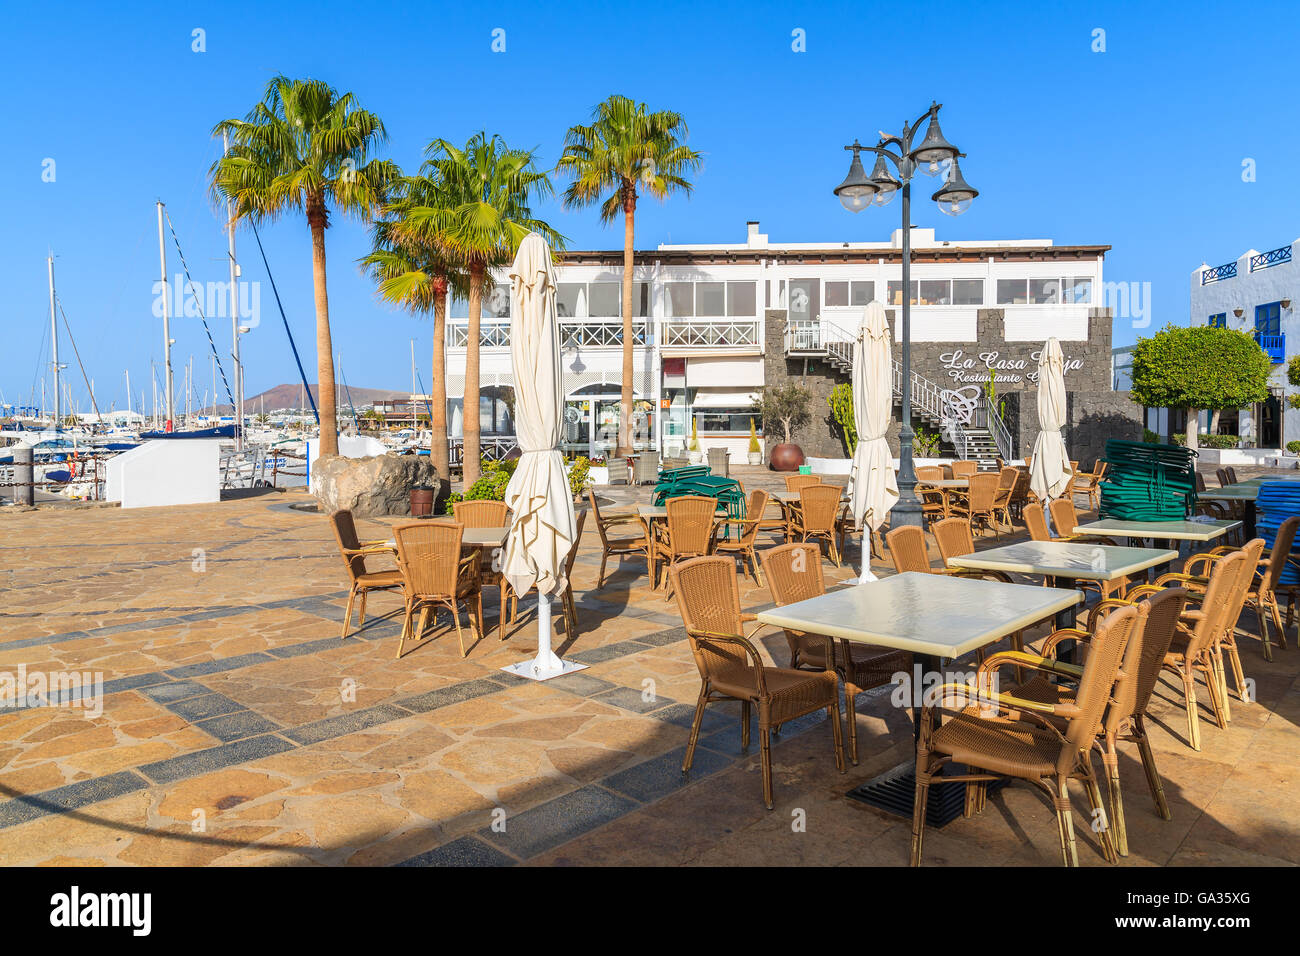 L'île de Lanzarote, Marina Rubicon - Jan 11, 2015 : tables de restaurant dans Rubicon, ville de port de Playa Blanca. Canaries sont des destinations de vacances les plus prisées en raison de sunny climat tropical. Banque D'Images